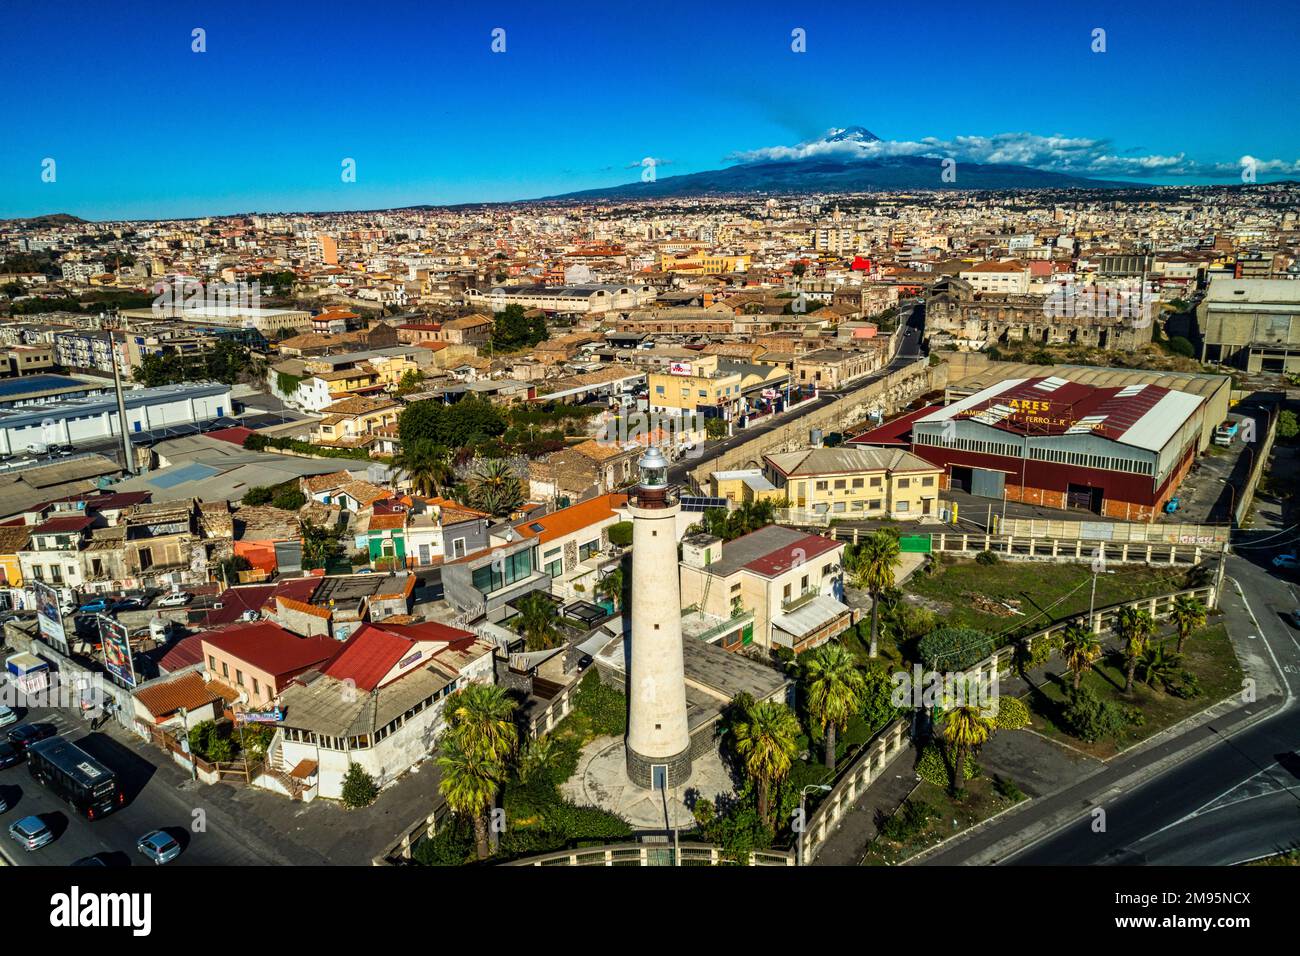 Wunderschöner Blick aus der Vogelperspektive auf die Stadt Catania auf Sizilien von oben mit dem Vulkan Ätna am Horizont. Catania, Sizilien, Italien, Europa Stockfoto